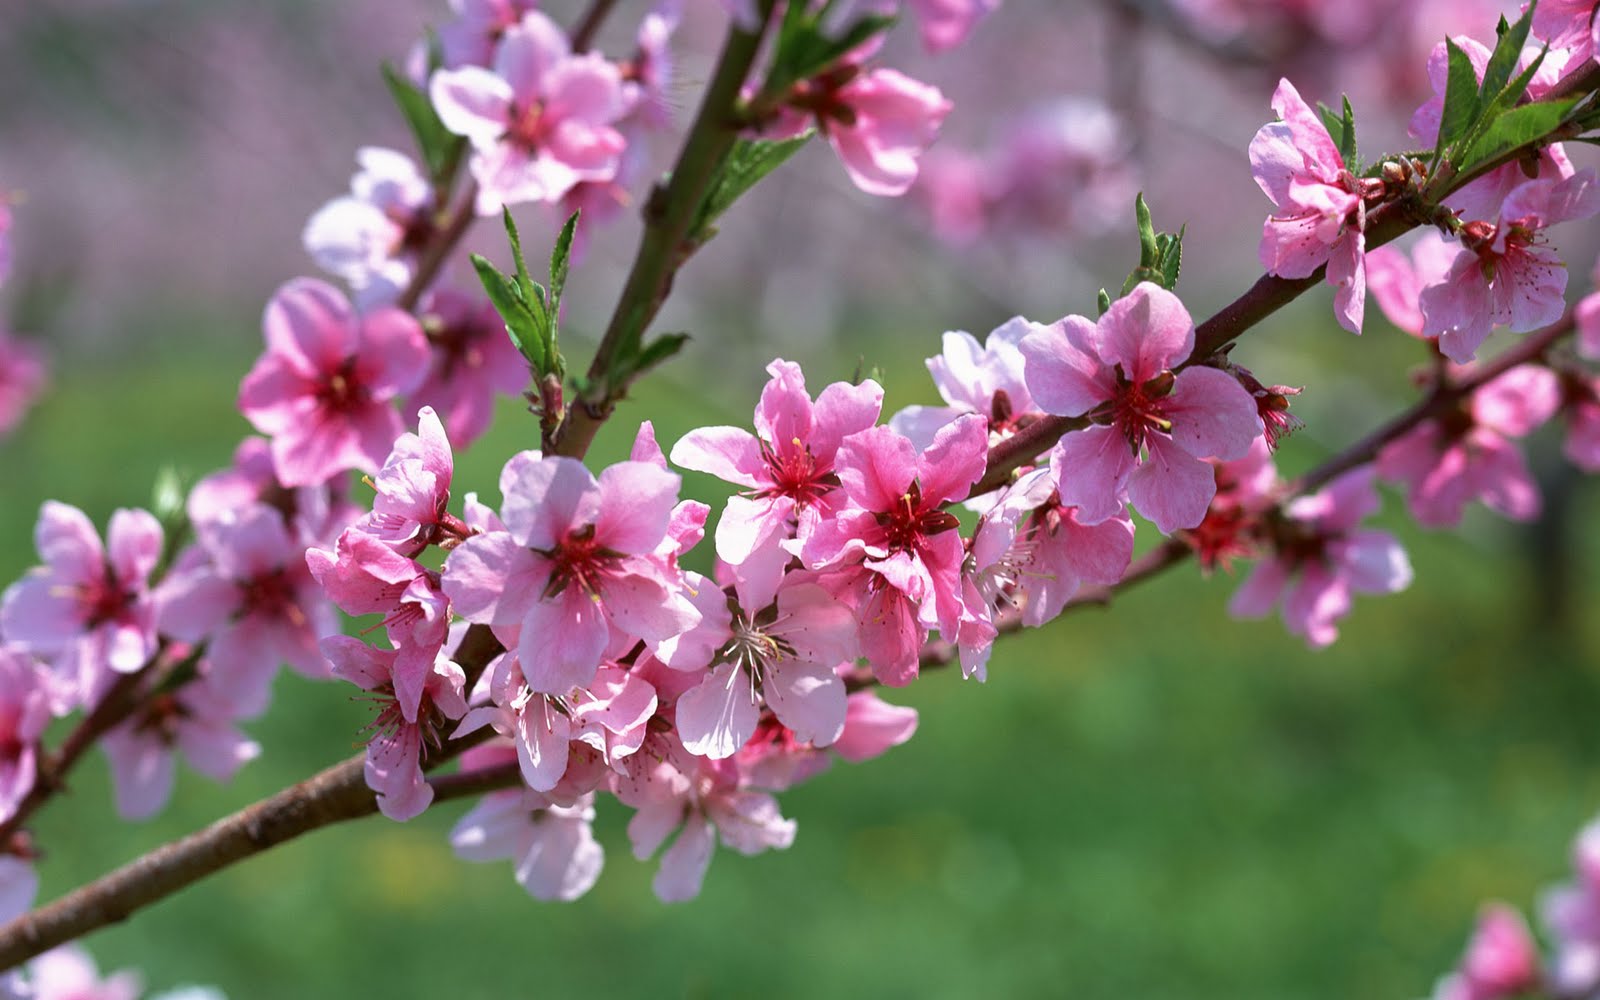 Cherry Blossom image